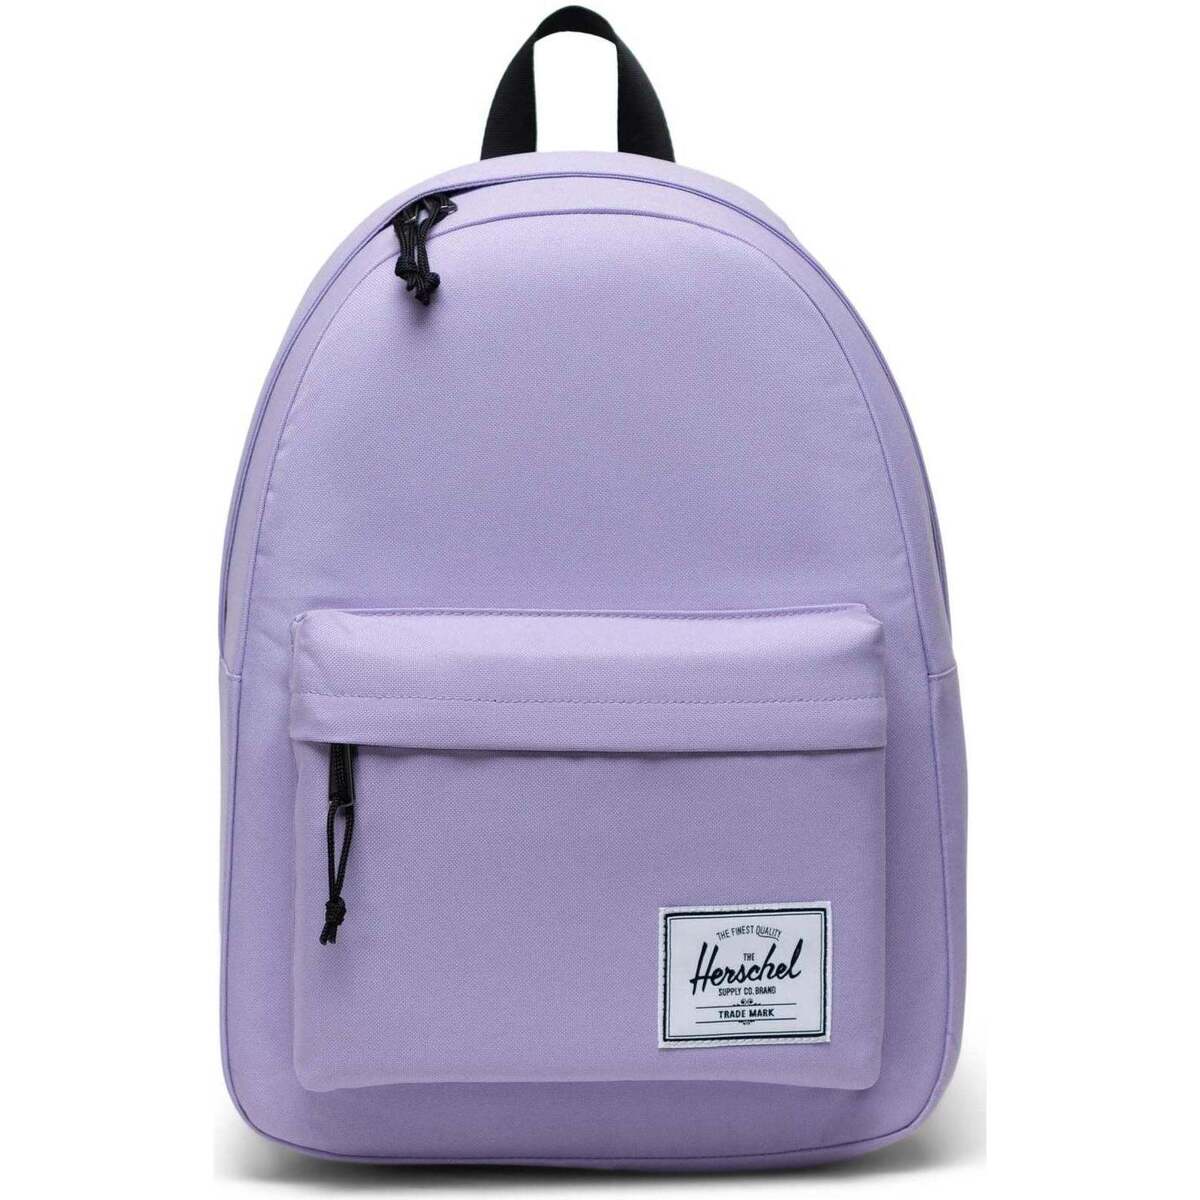 Herschel Violet Mochila Herschel Classic Backpack Purple Rose cFcU4qR9